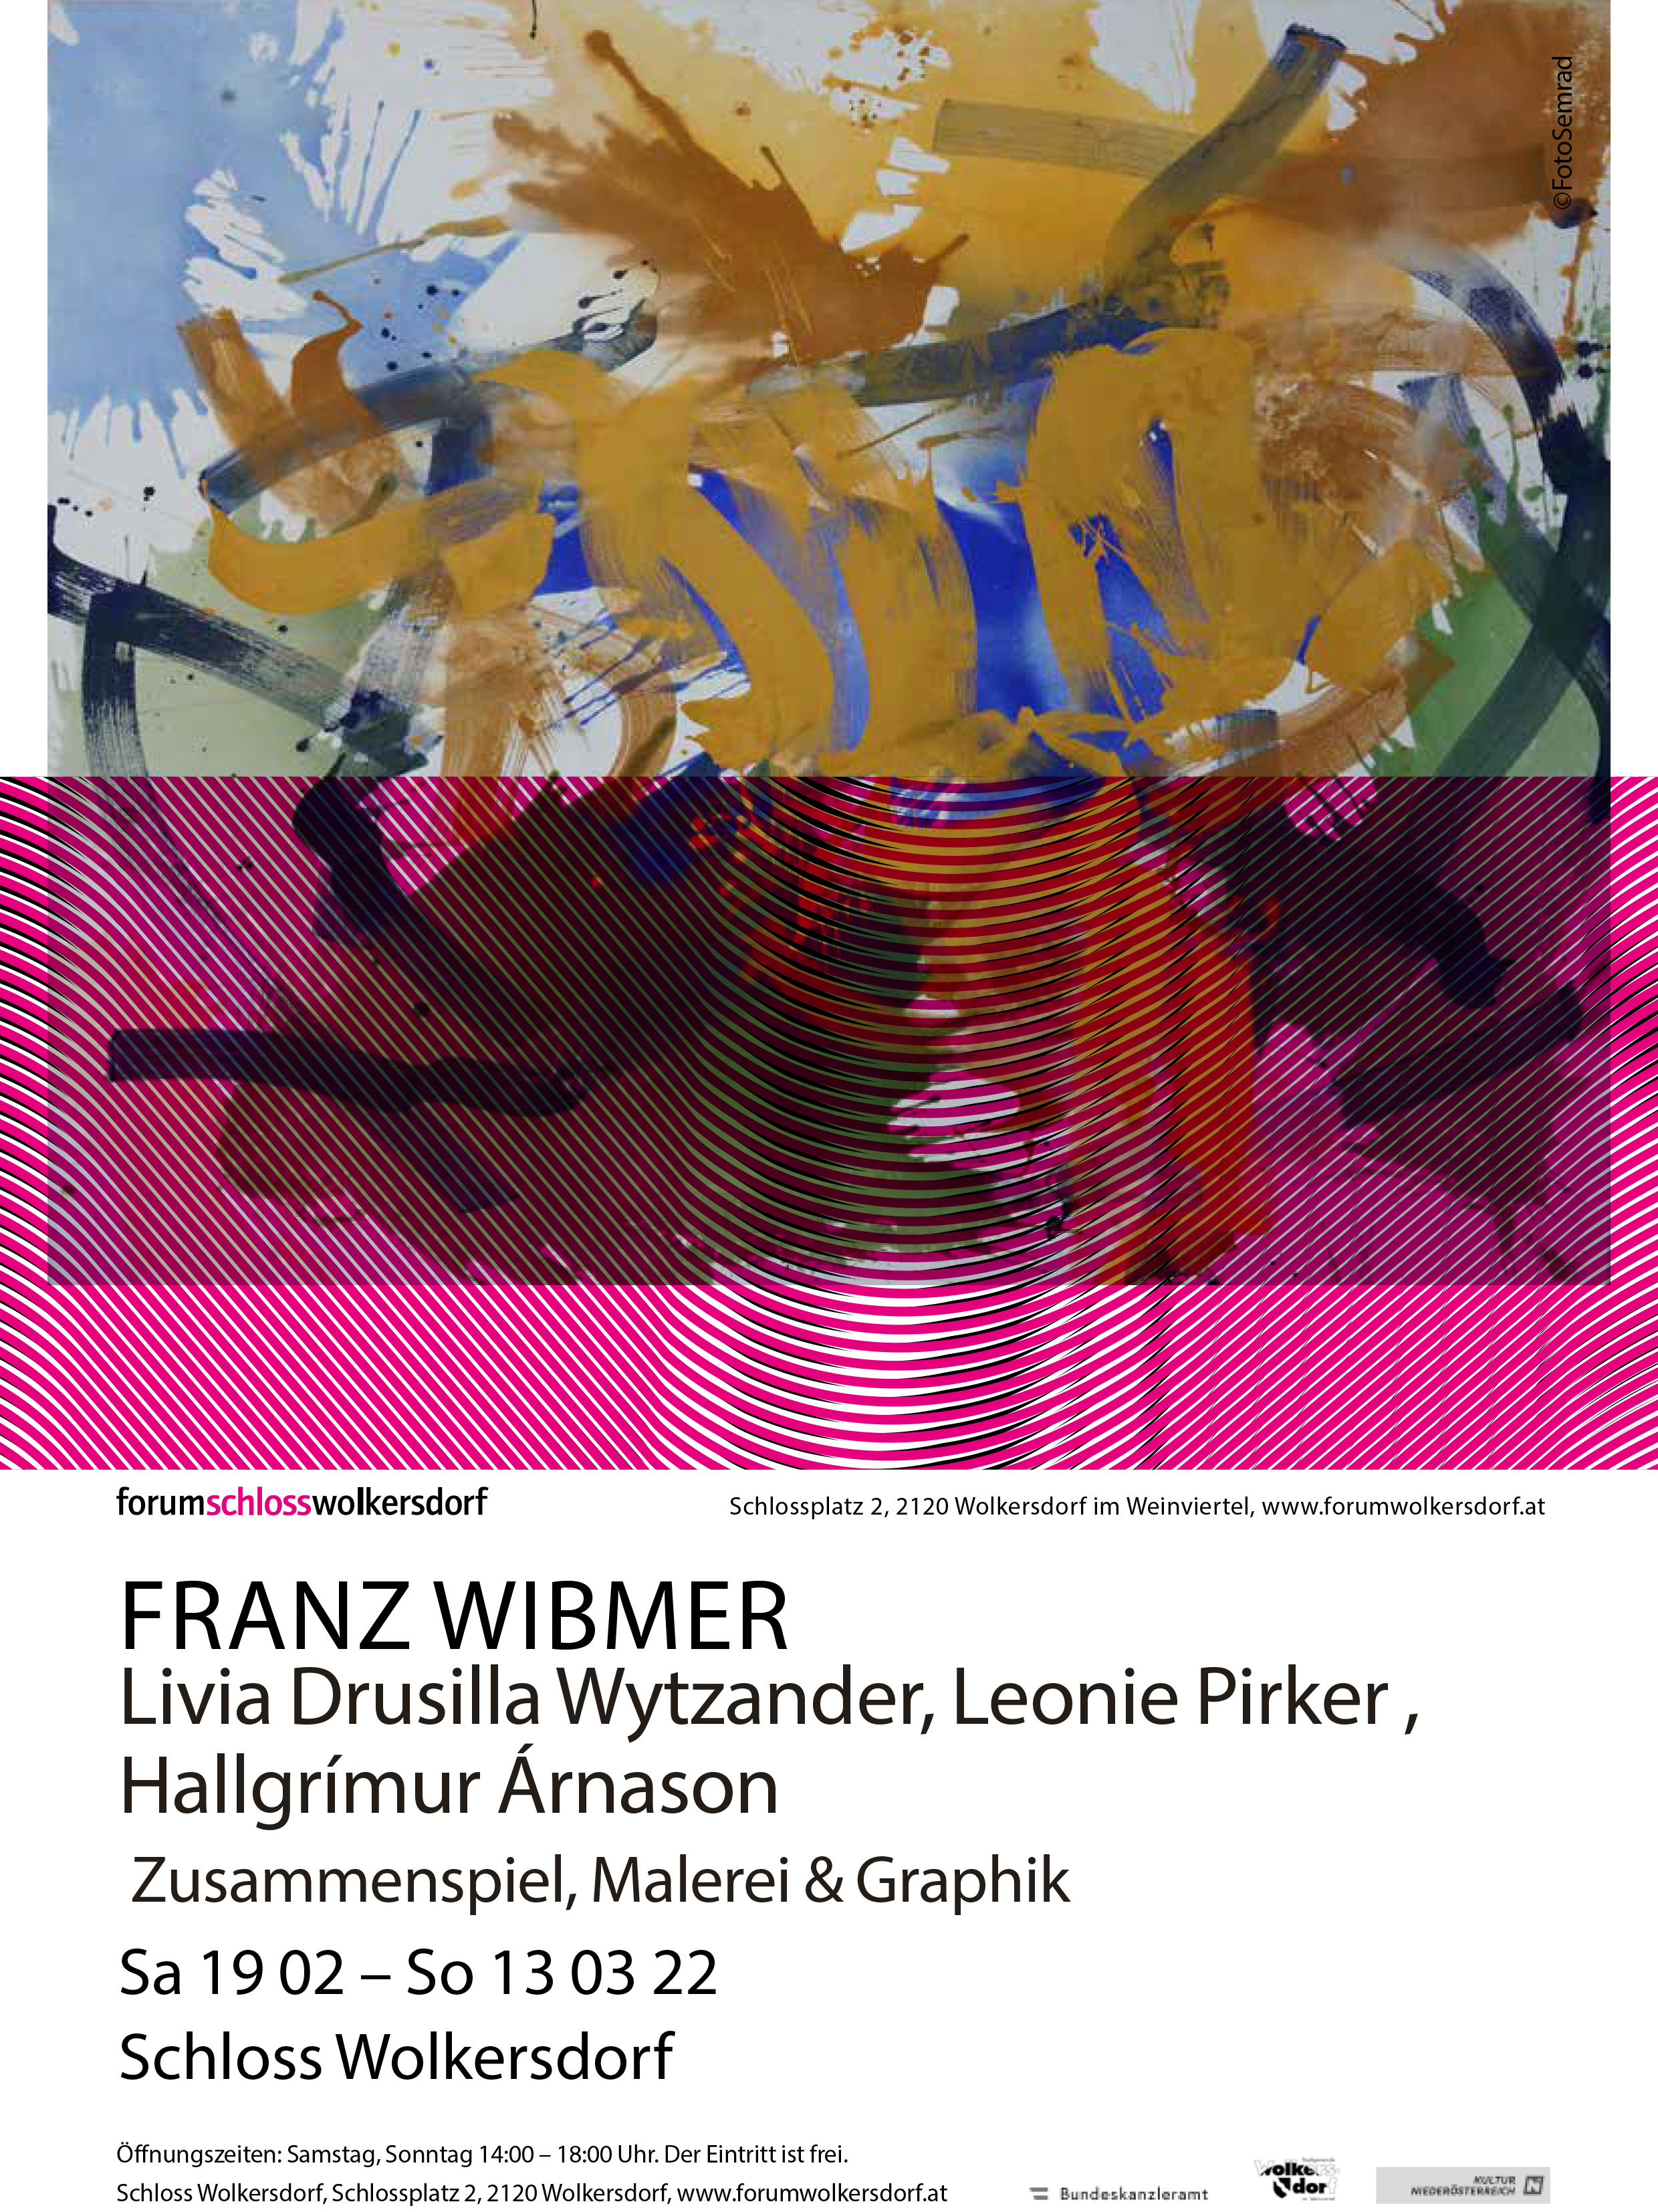 Franz Wibmer, „Zusammenspiel“, Schloss Wolkersdorf/Weinviertel, 2022